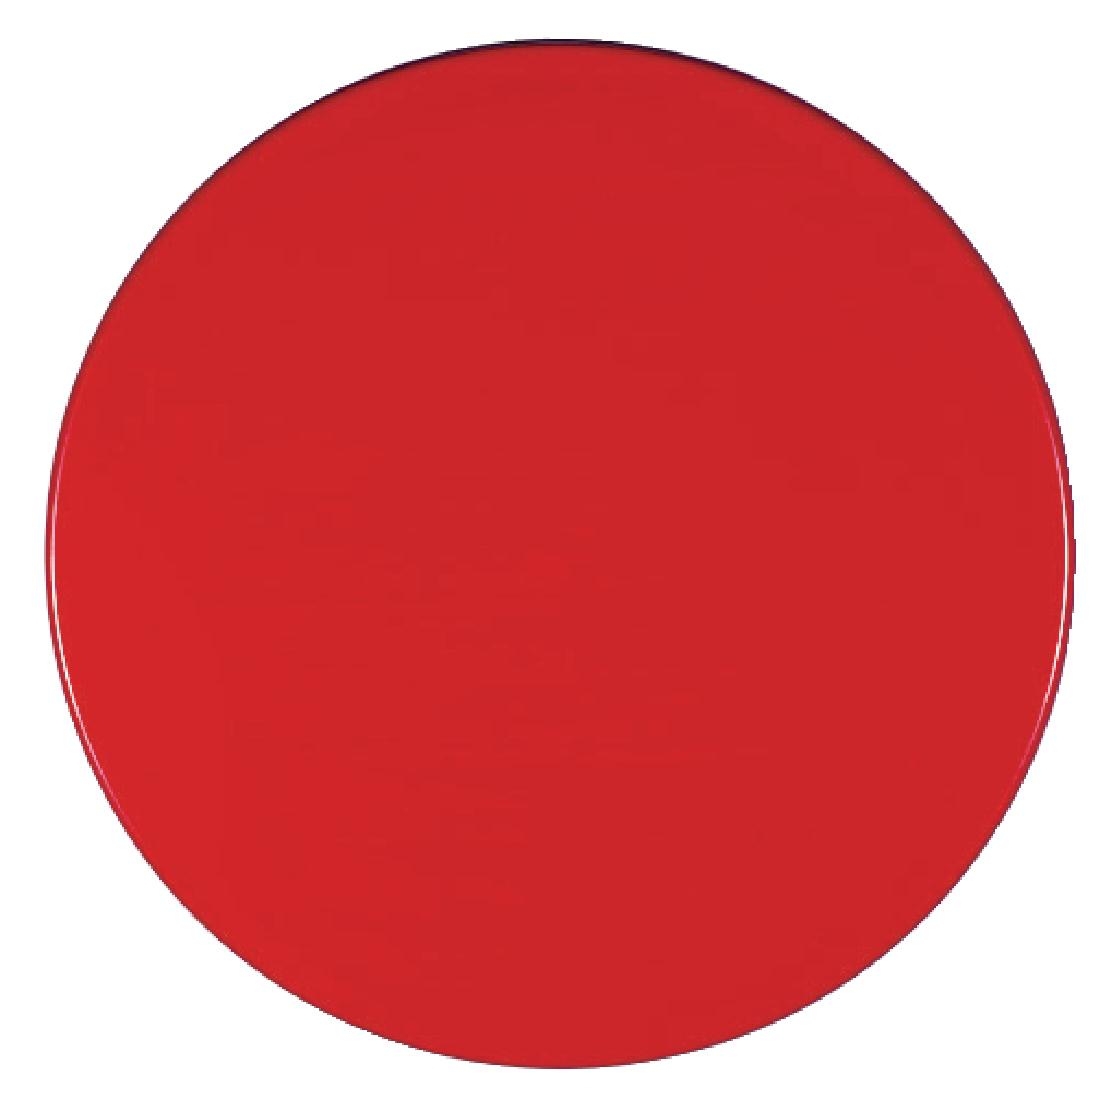 Werzalit Pre-drilled Round Table Top  Dark Red 700mm